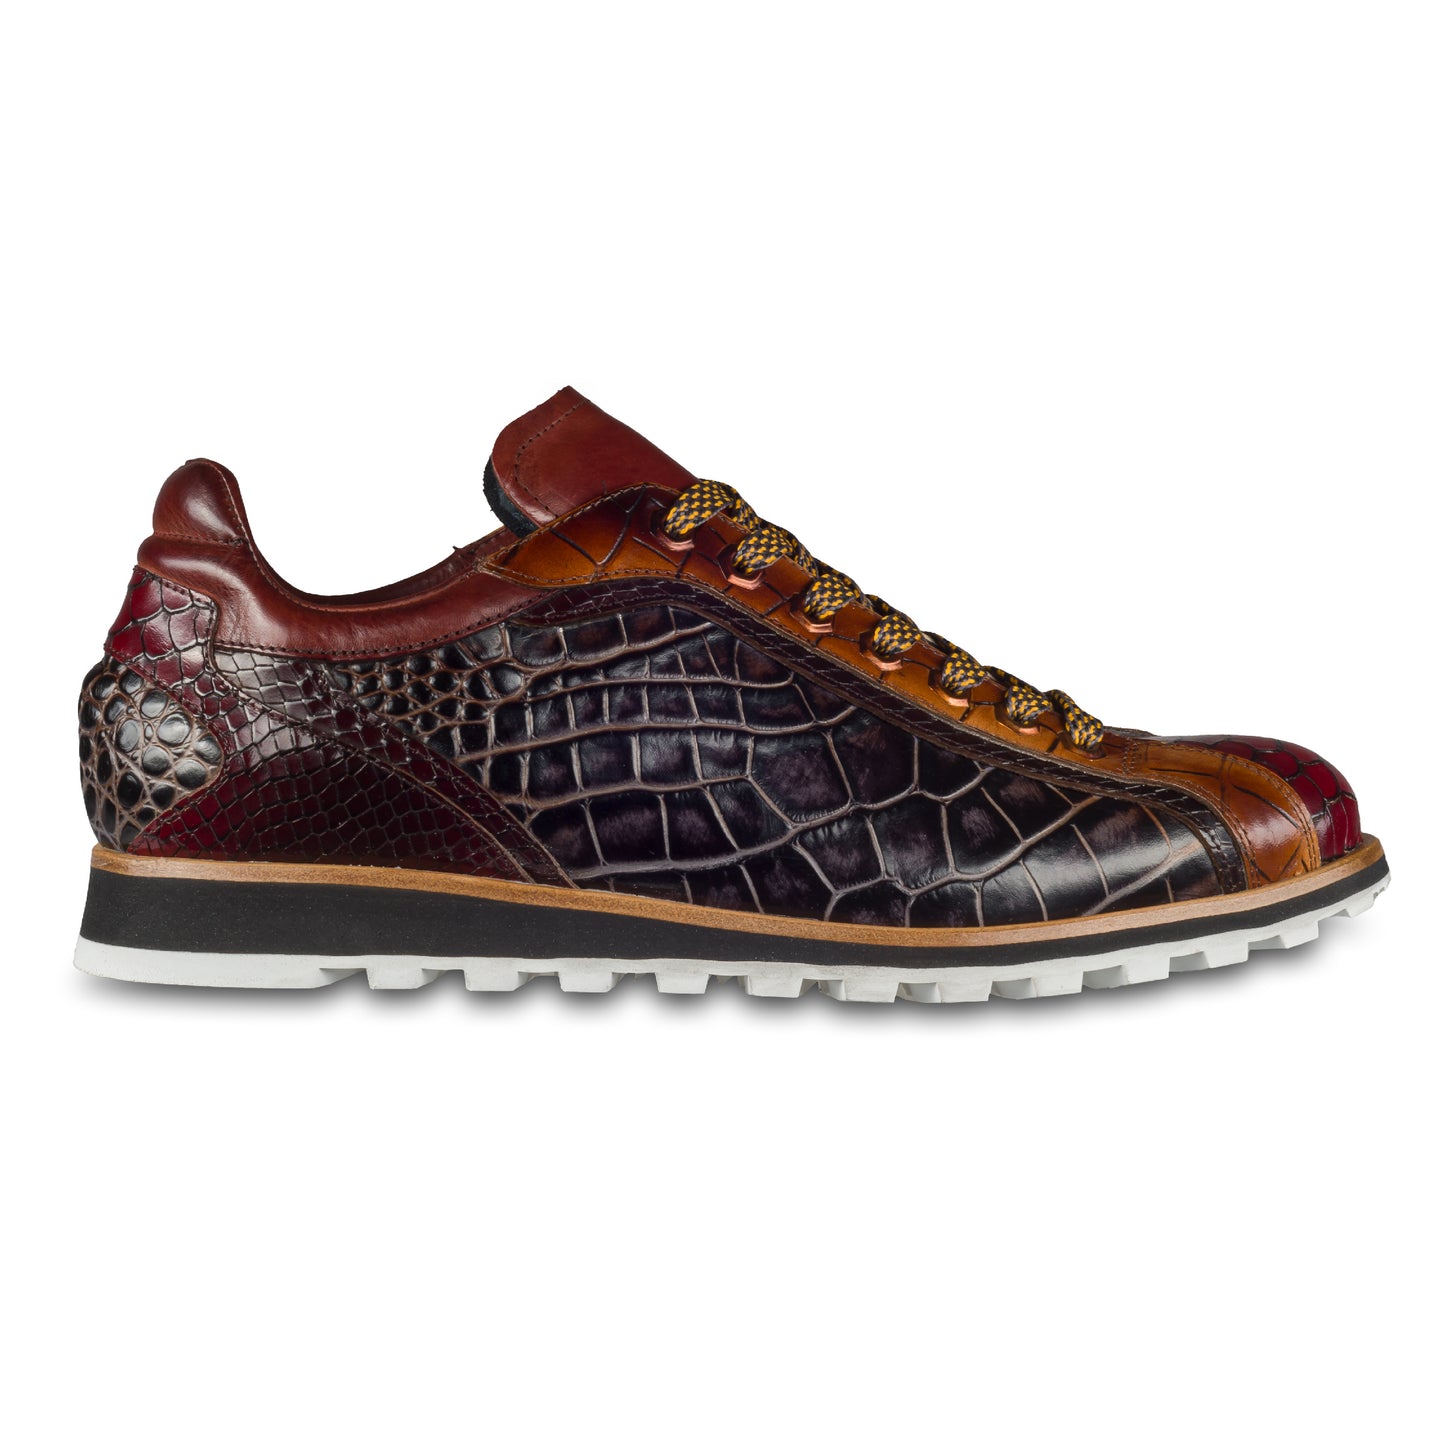 Lorenzi Herren Leder-Sneaker mit Reptil-Prägung in braun/rot. Handgefertigt. Seitliche Ansicht der Außenseite rechter Schuh.